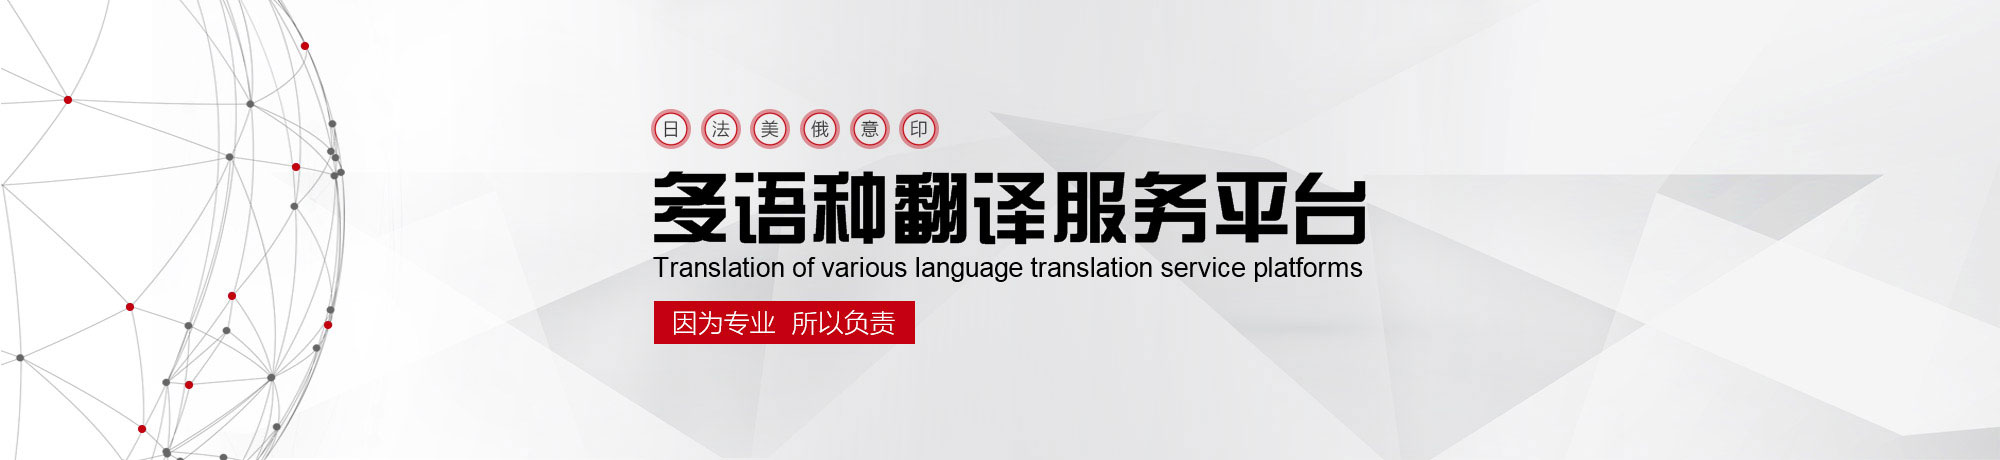 北京翻译公司,专业翻译公司,权威翻译公司,翻译机构,正规翻译公司